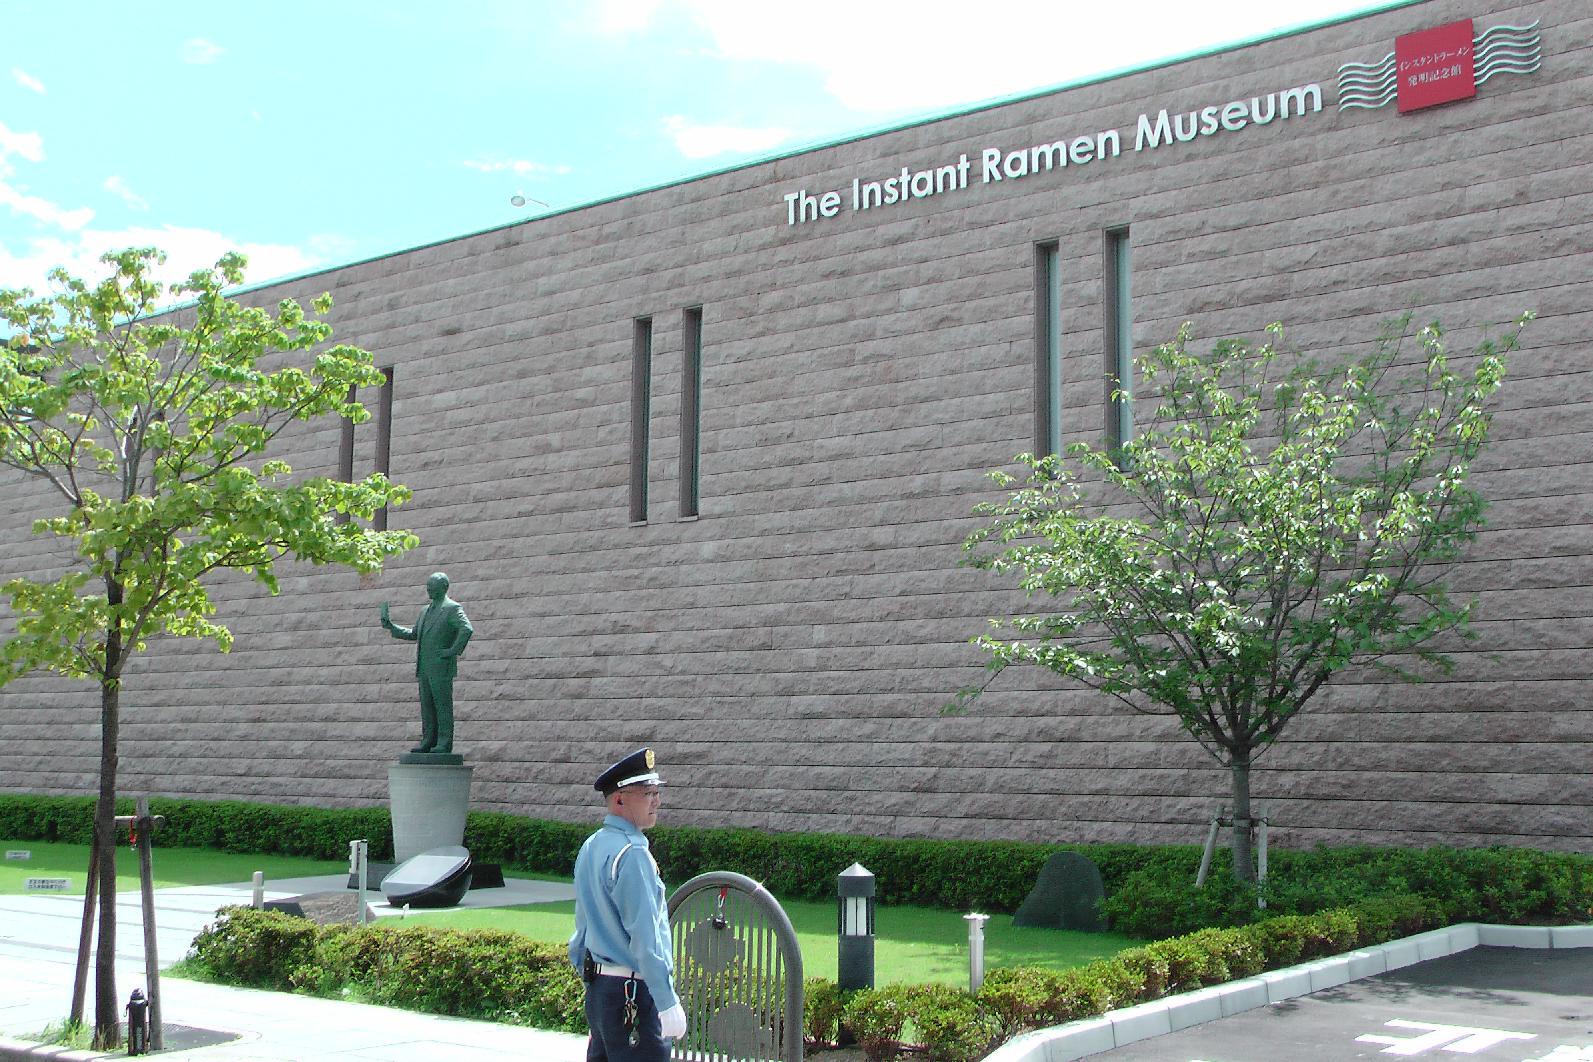 The instant Ramen Museum in Ikeda